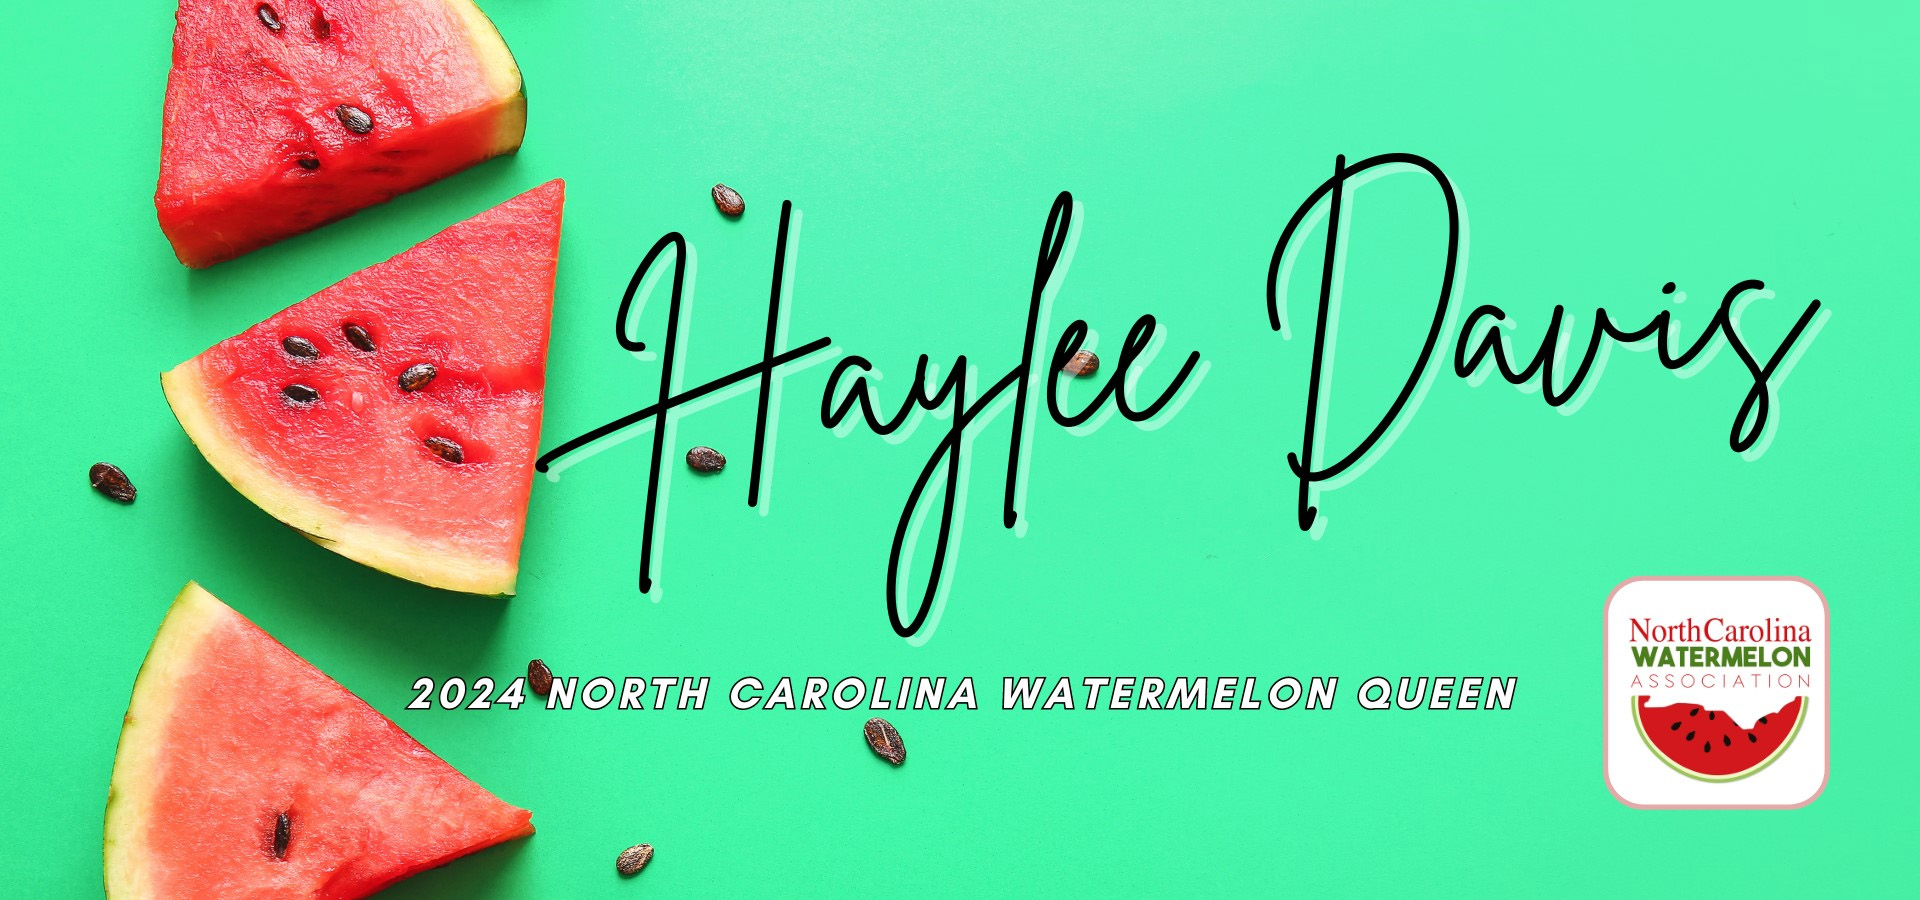 NC Watermelon Queen Haylee Davis